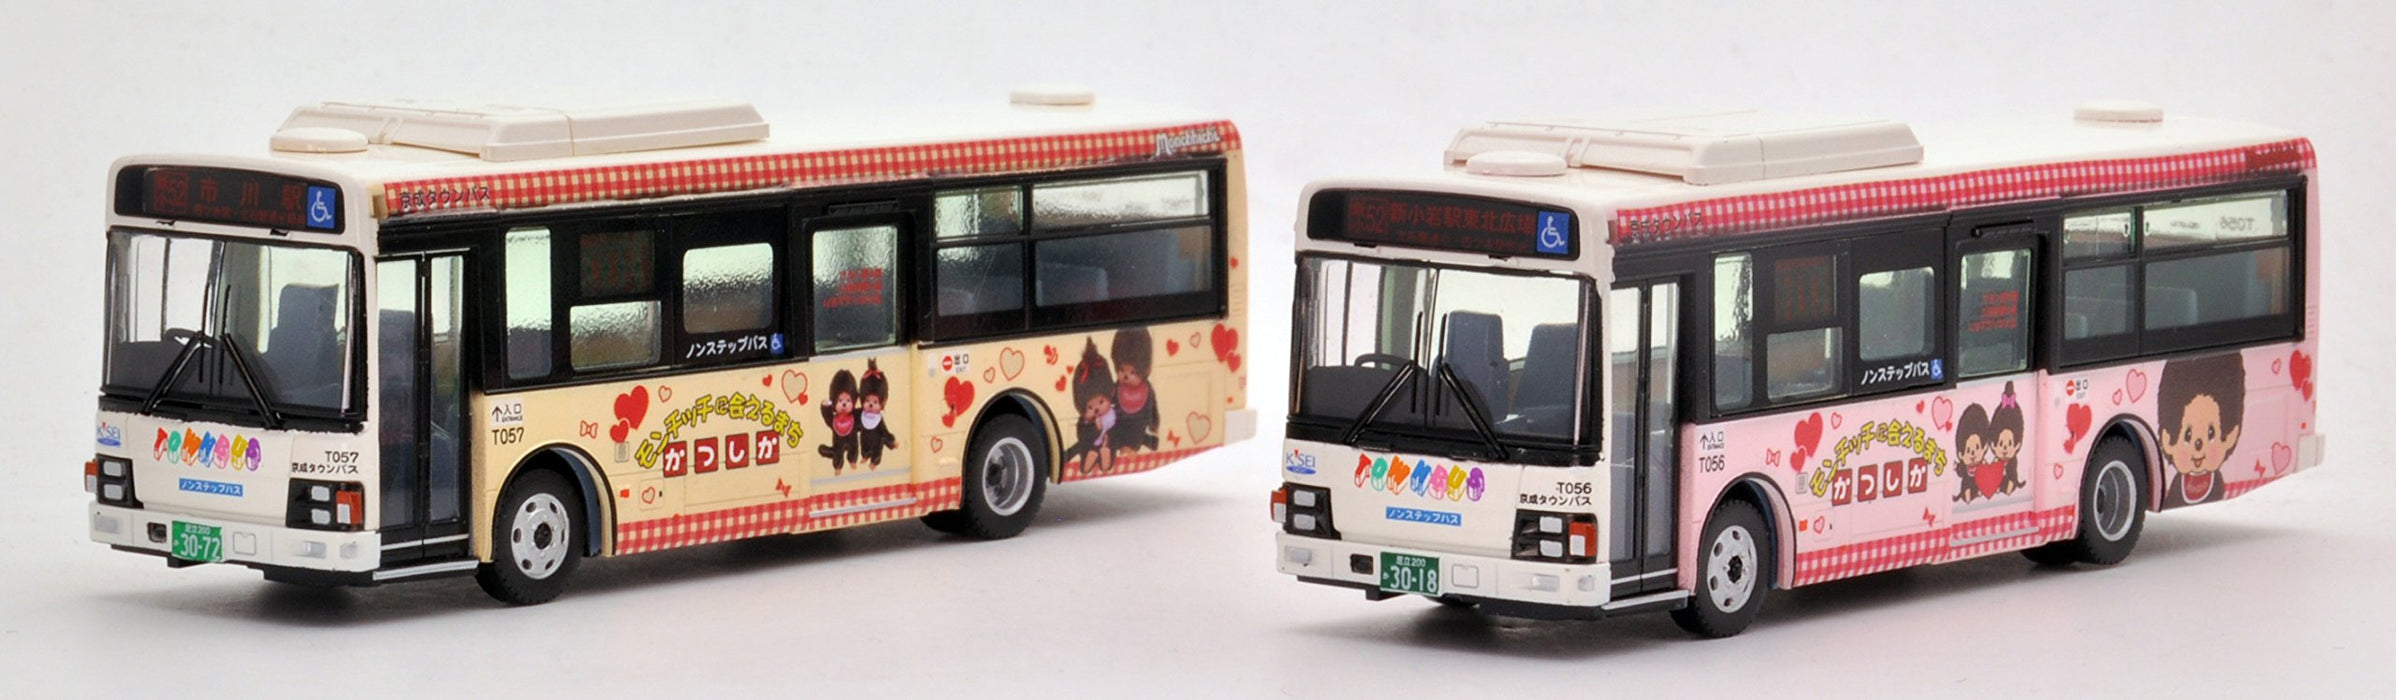 Tomytec National Bus Collection 1/80 Serie Jh021 – Keisei Town Katsushika Wrapping Bus